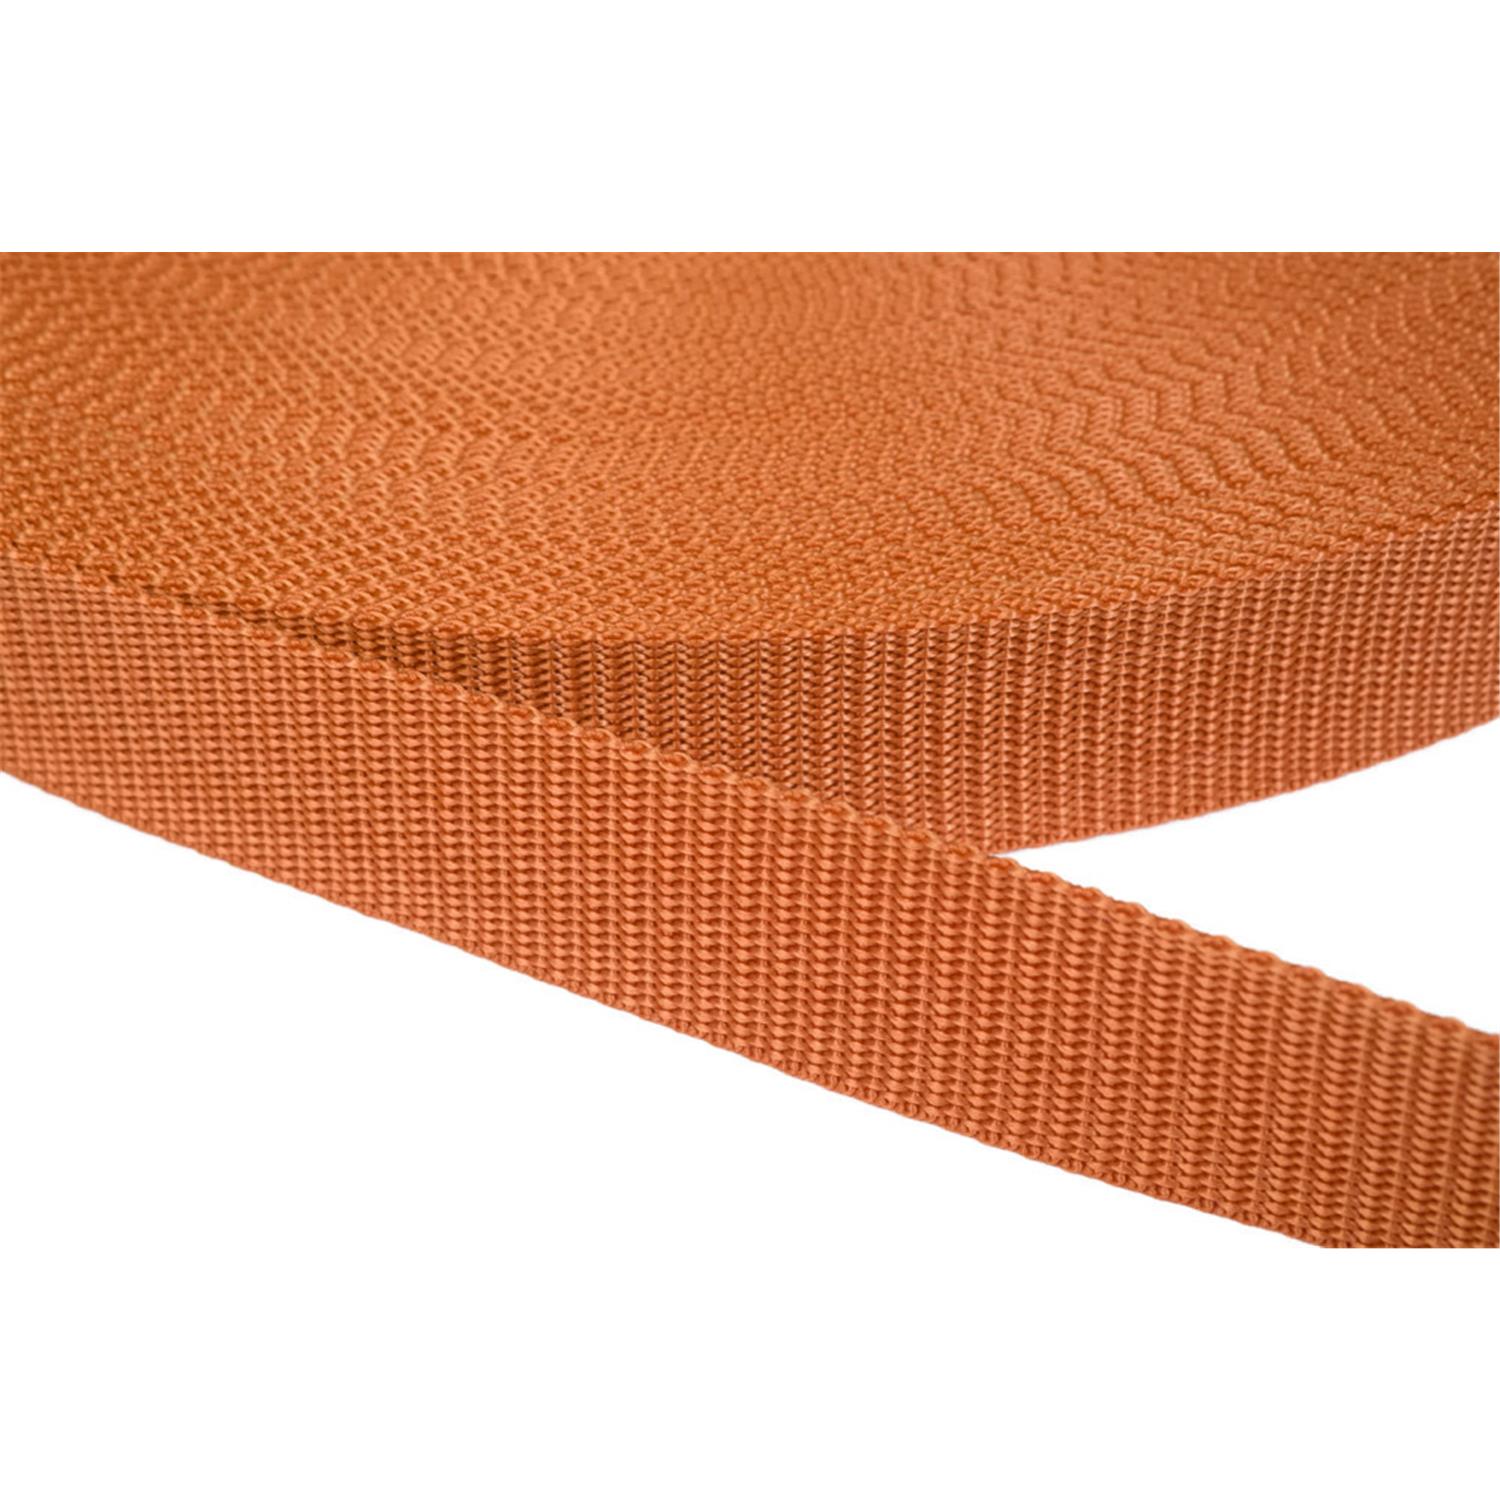 Gurtband 20mm breit aus Polypropylen in 41 Farben 05 - ockerbraun 50 Meter